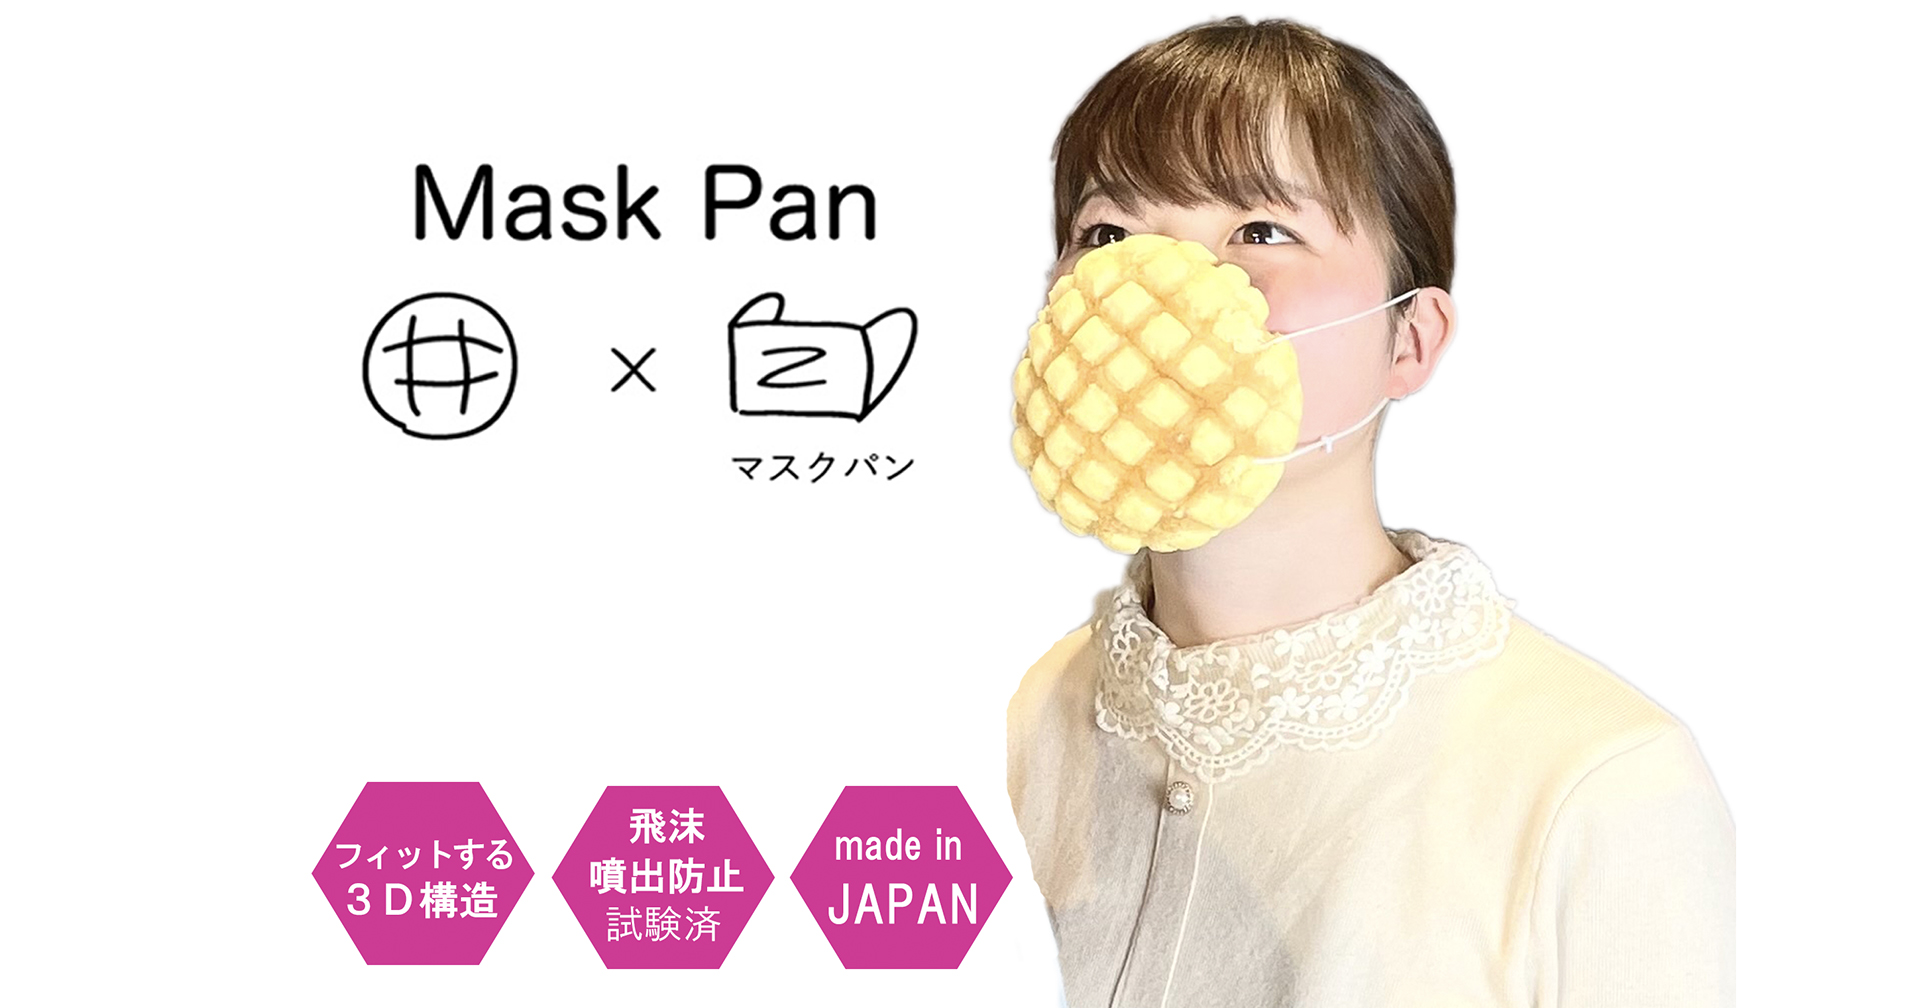 ญี่ปุ่นผลิตหน้ากากอนามัยกินได้ ทำจากขนมปังเมลอน